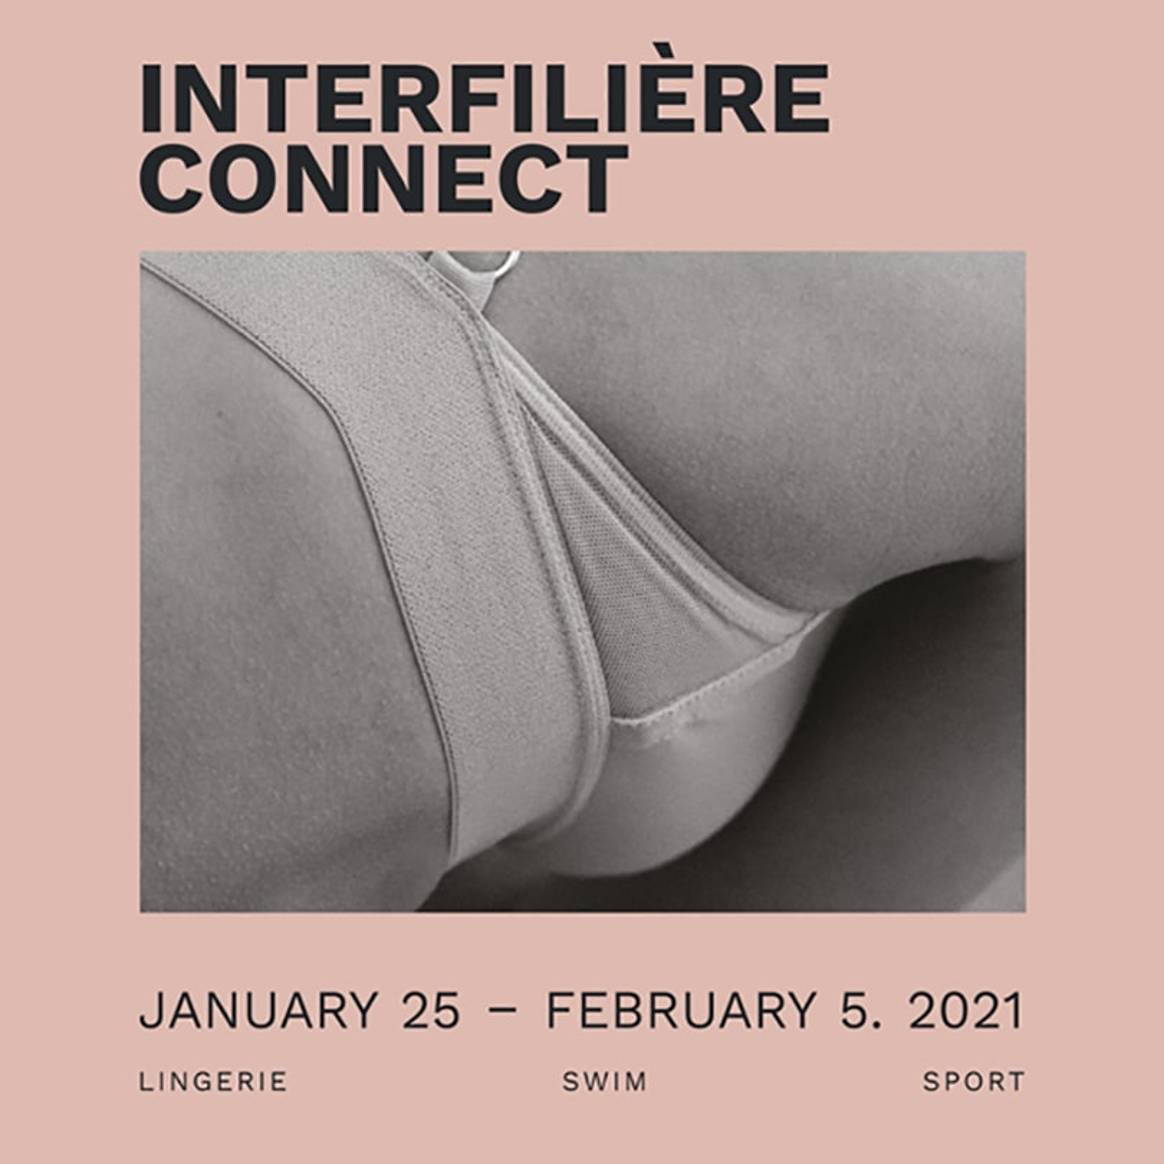 Le Salon International de la Lingerie et Interfilière Paris, prévus en janvier 2021, auront lieu en ligne